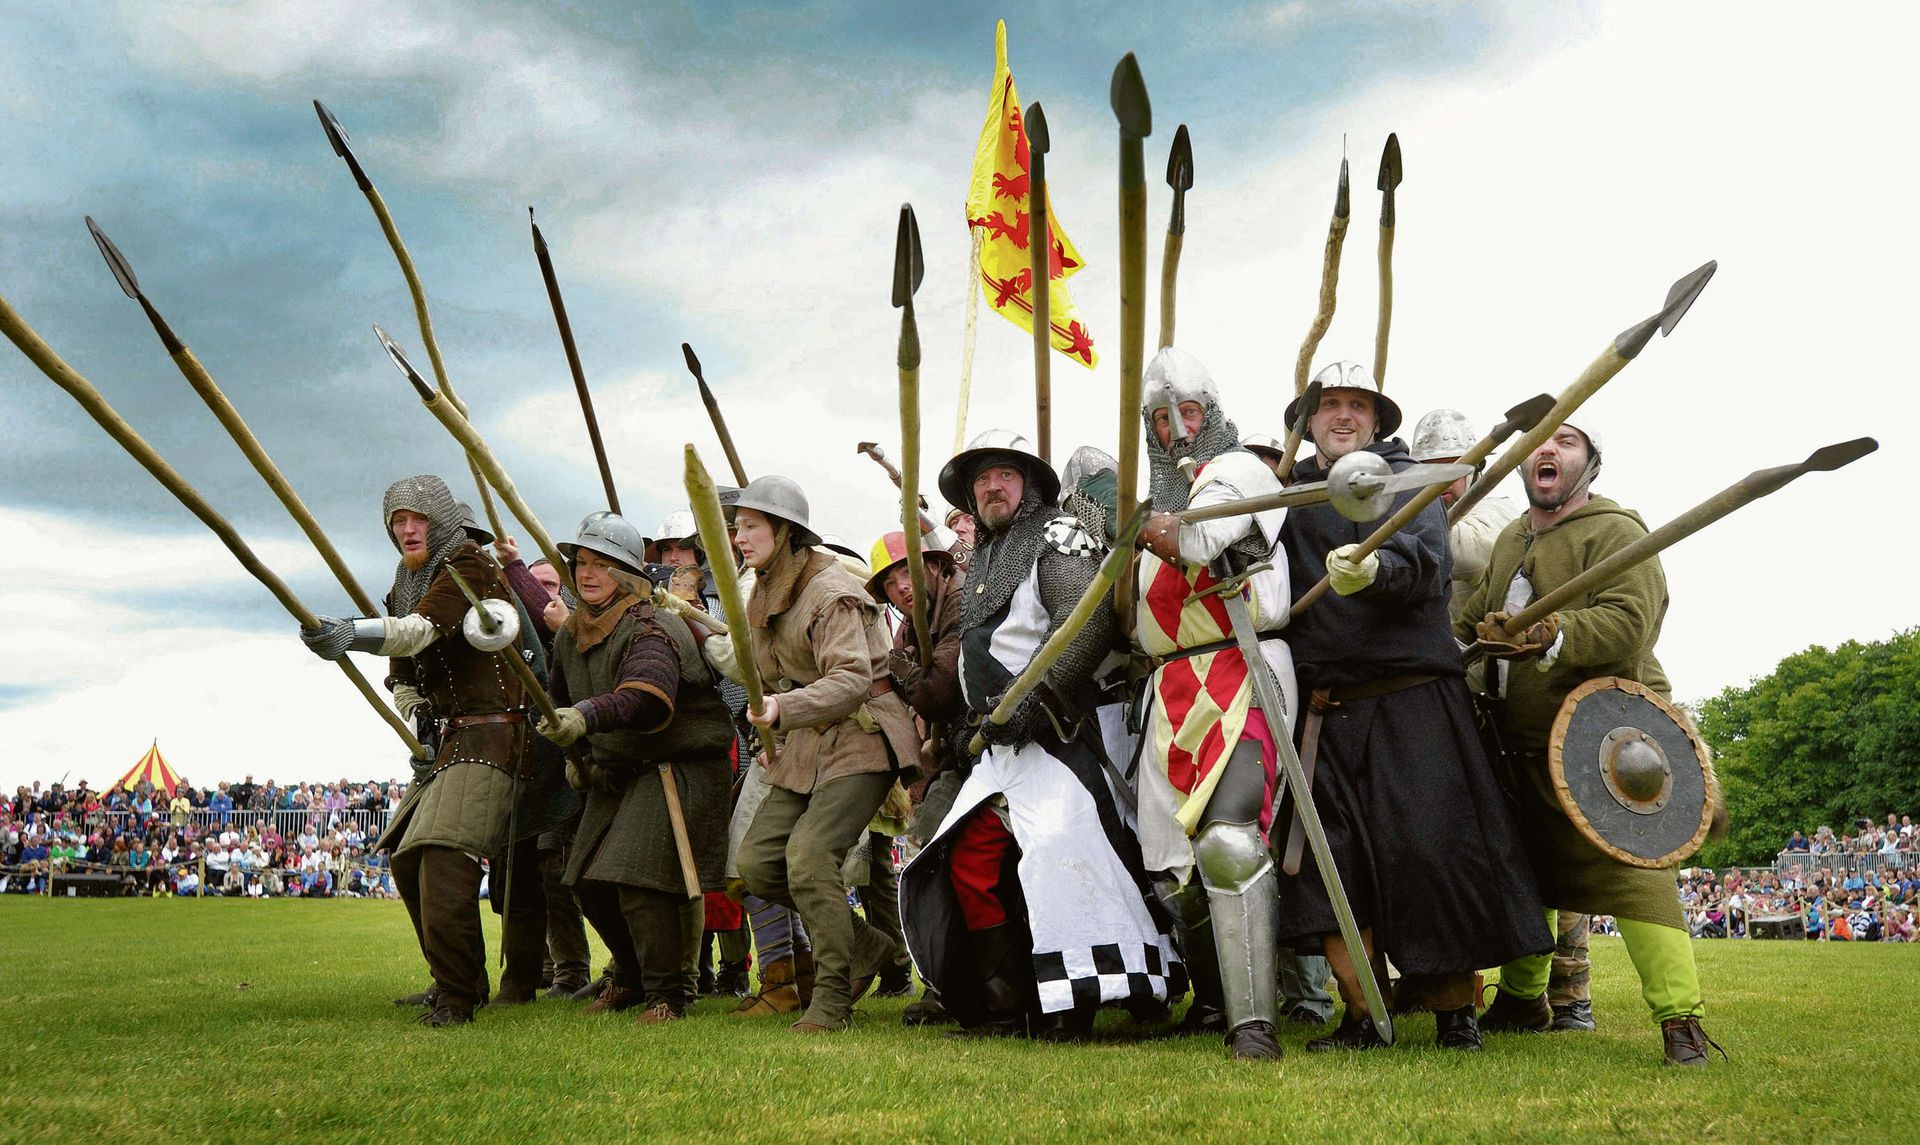 Битва квизов. Шотландия битва при Баннокберне. Битва при Баннокберне 1314. Рыцари Шотландии 13 век. Битва при Бэннокберне сражения Шотландии.